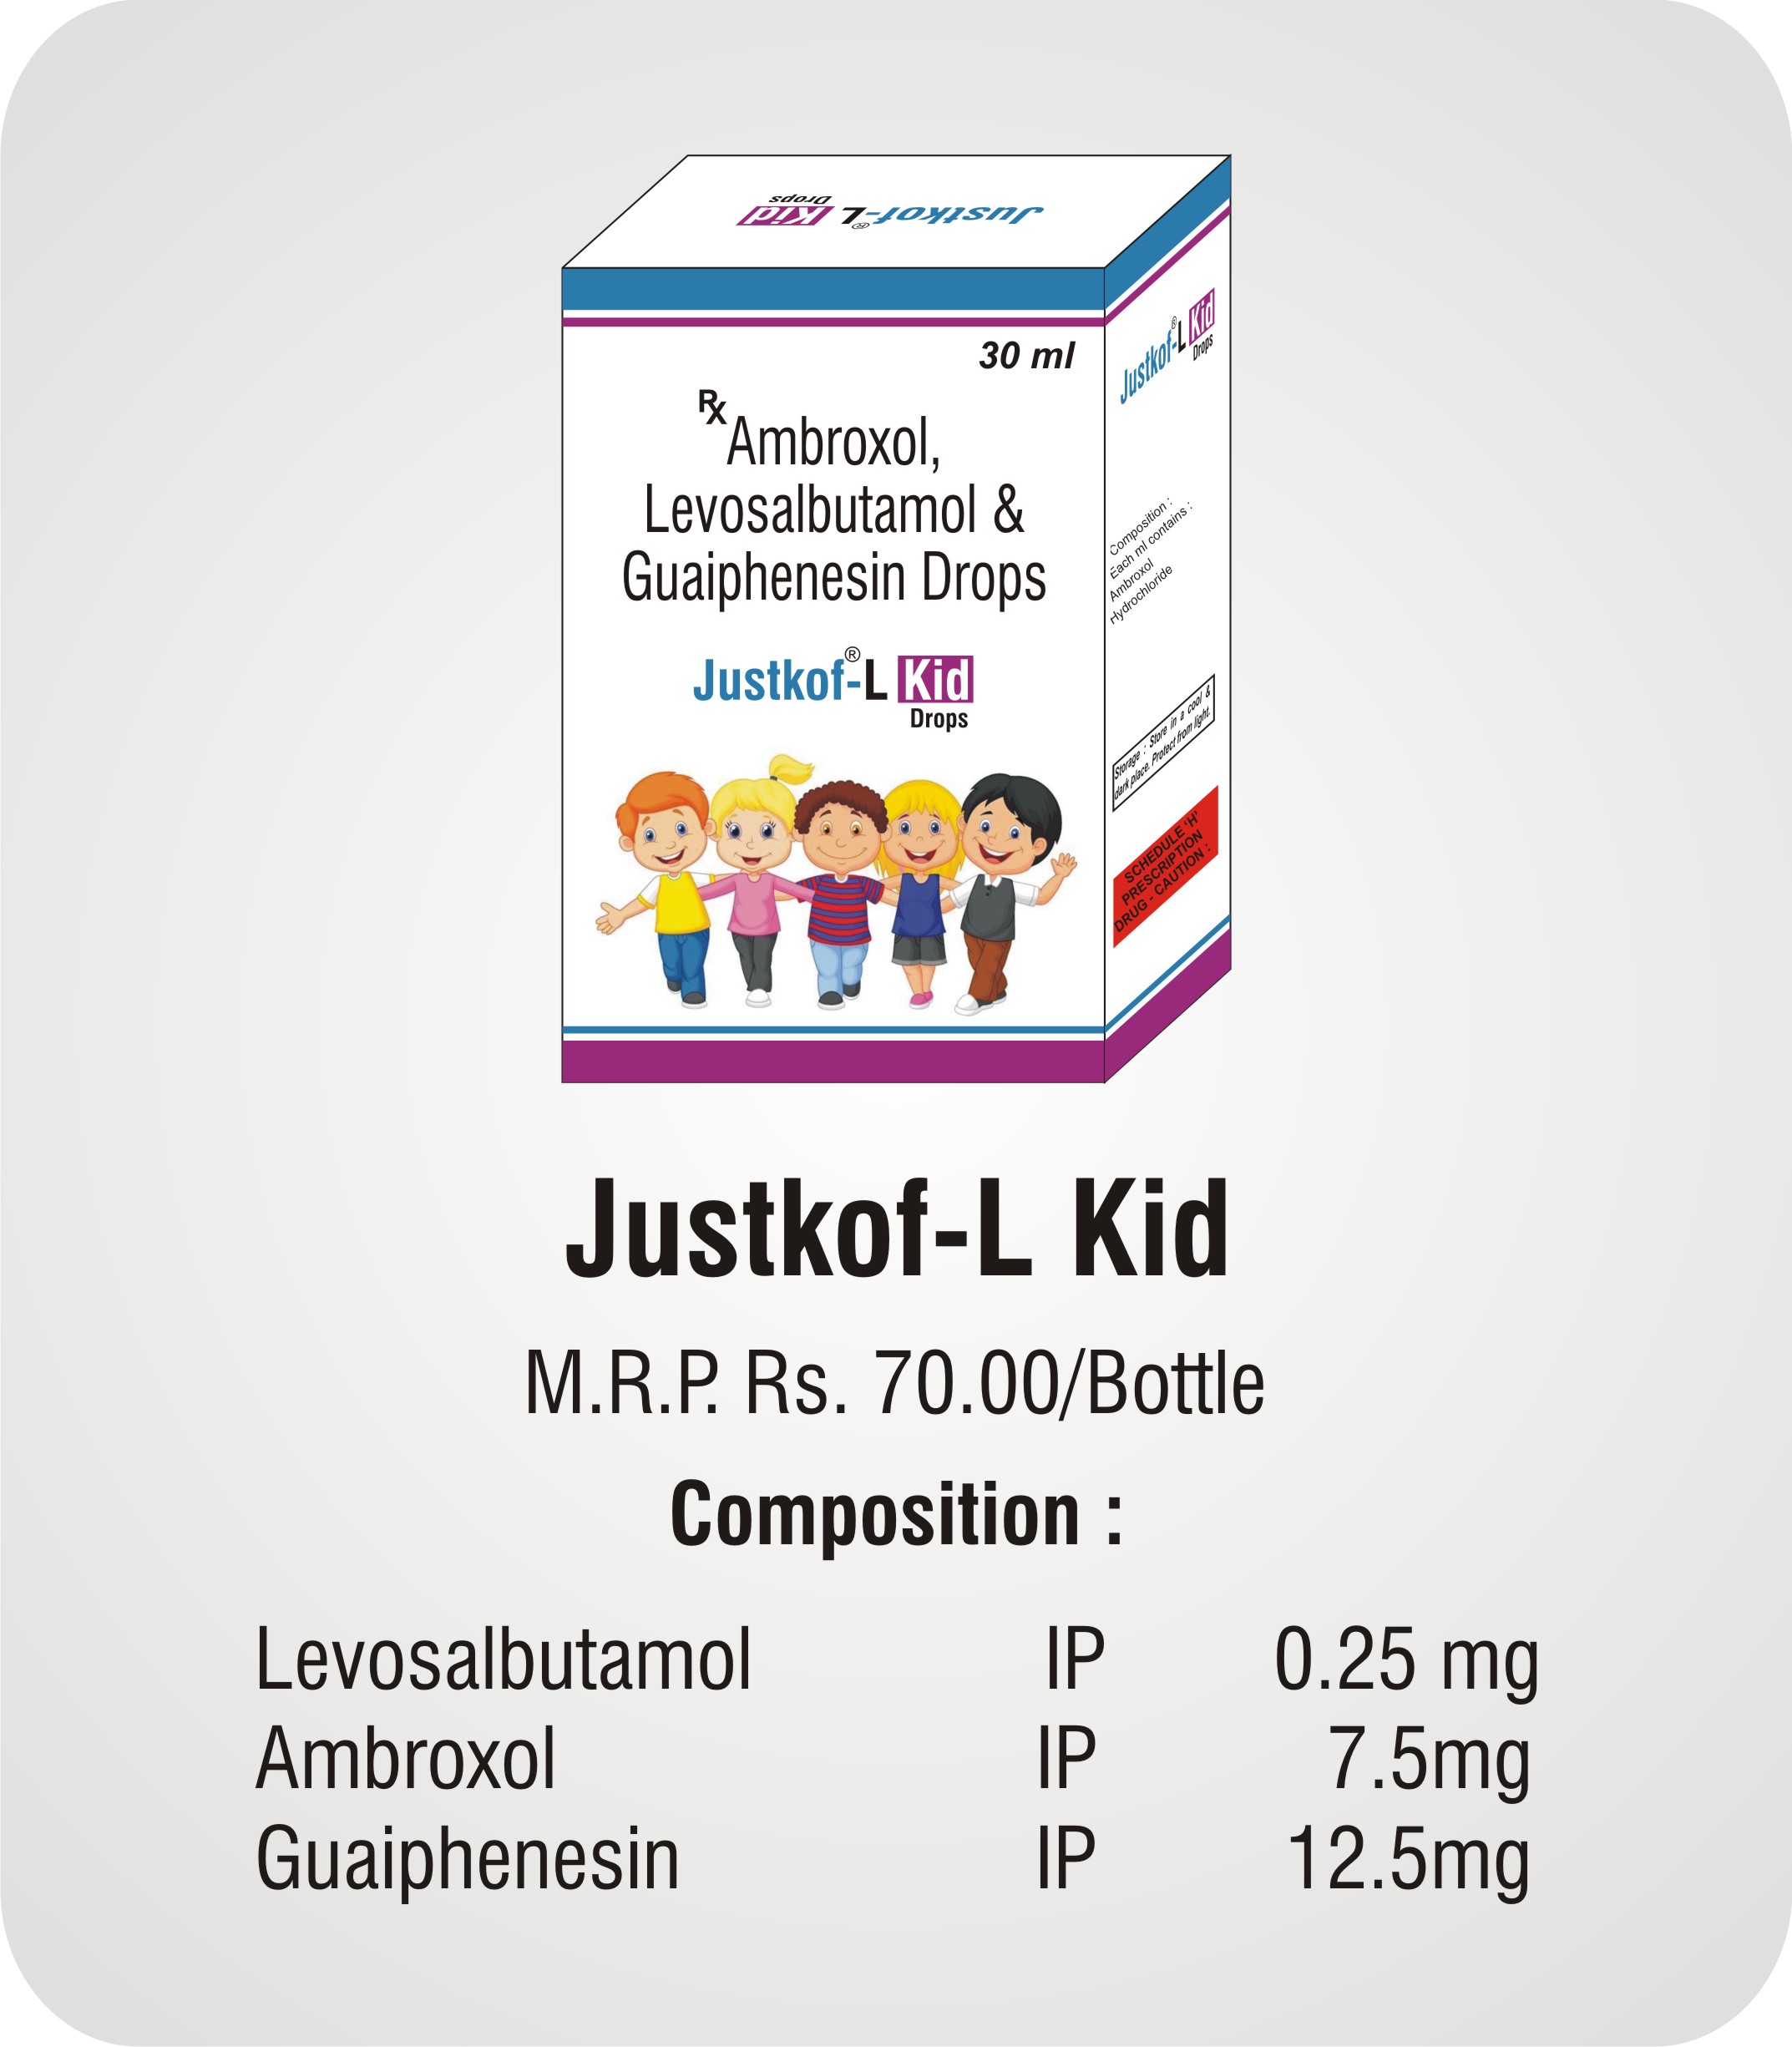 Justkof- L Kid Drops